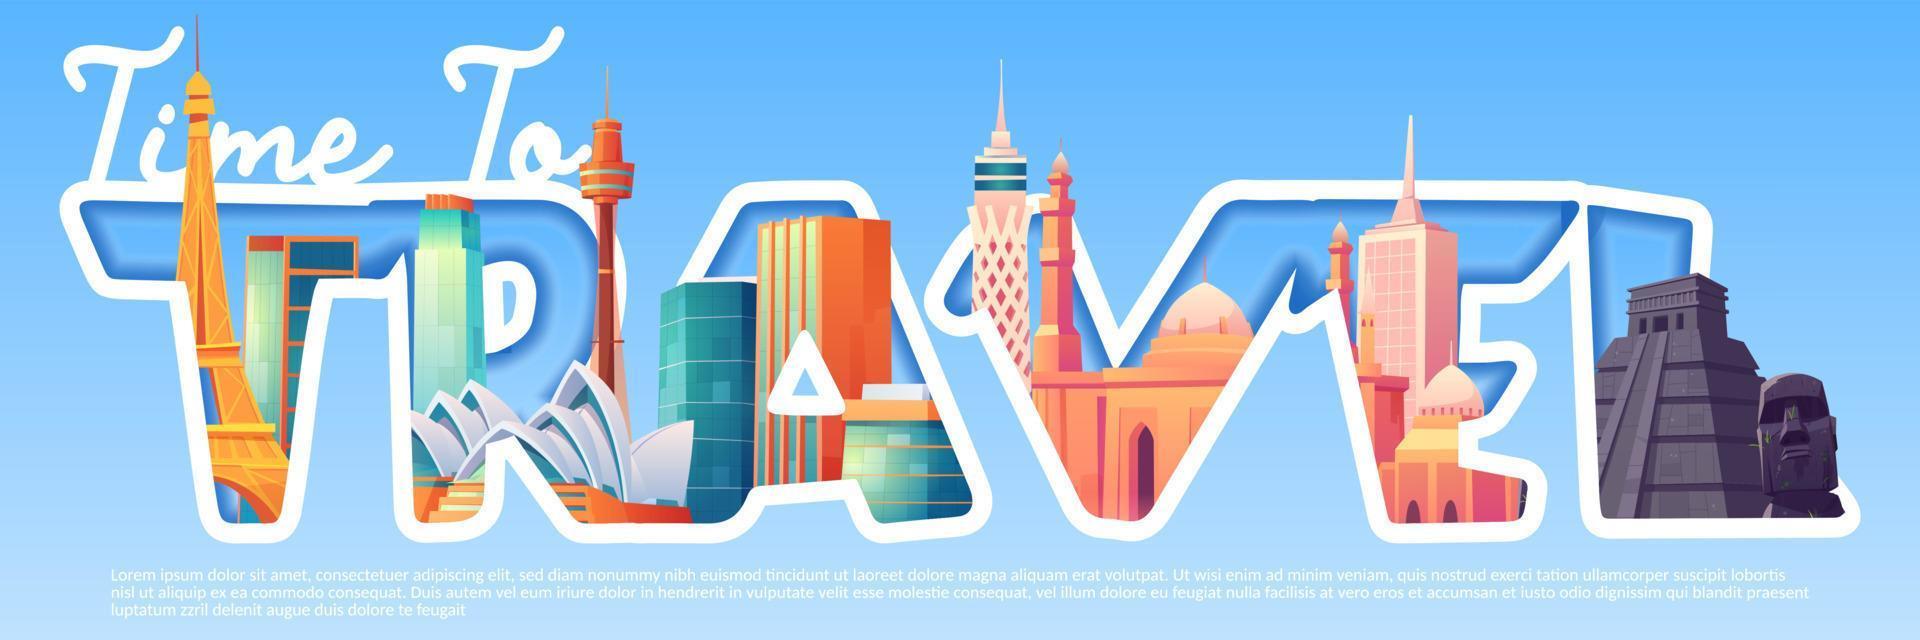 hora de viajar banner de dibujos animados con puntos de referencia mundiales vector